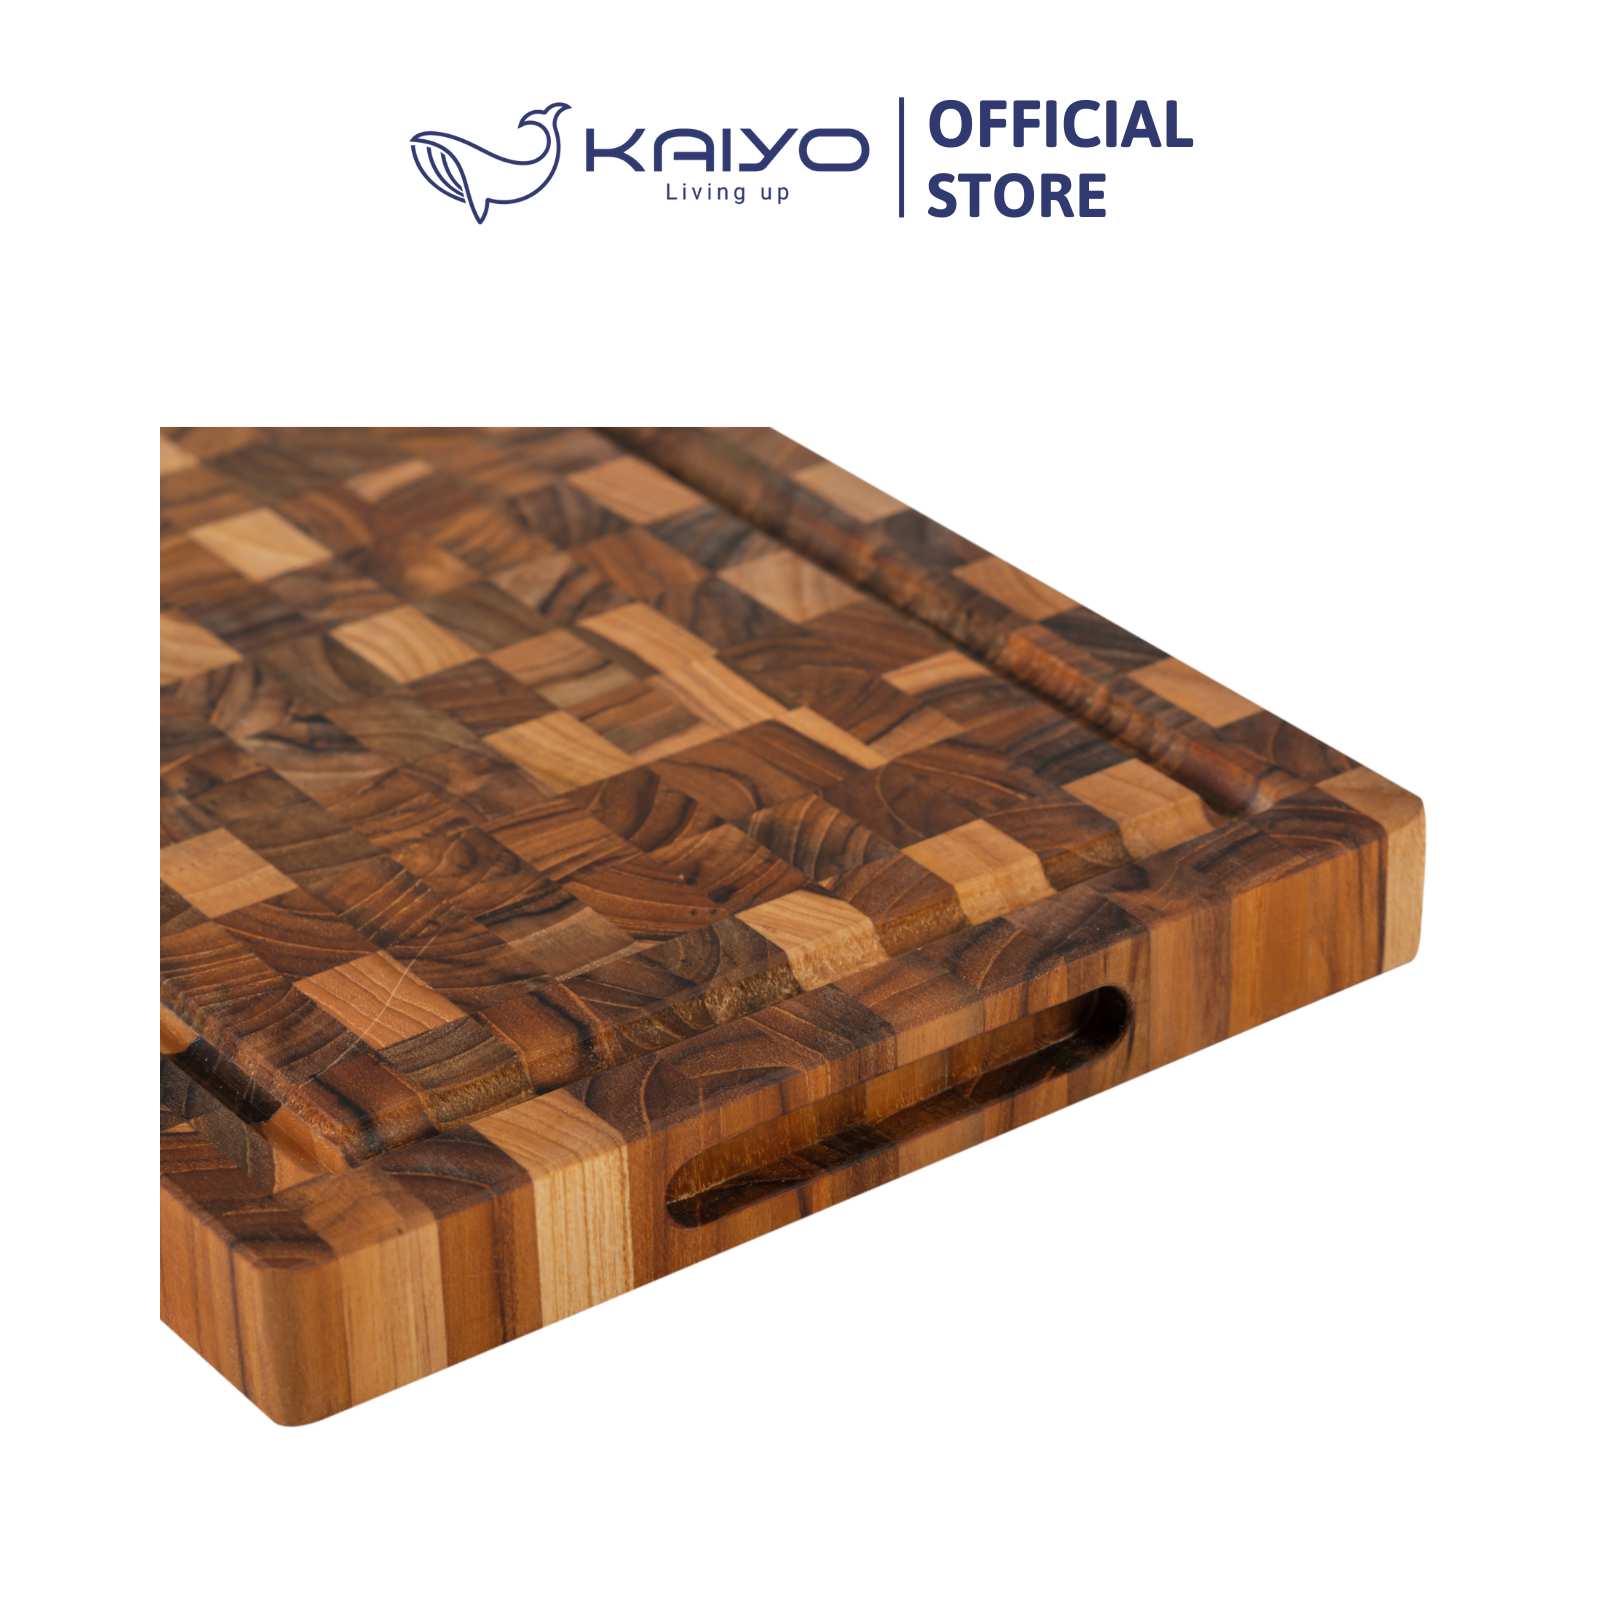 Thớt thái gỗ Teak đầu cây Kaiyo hình chữ nhật 30 x 20 x 2,5cm